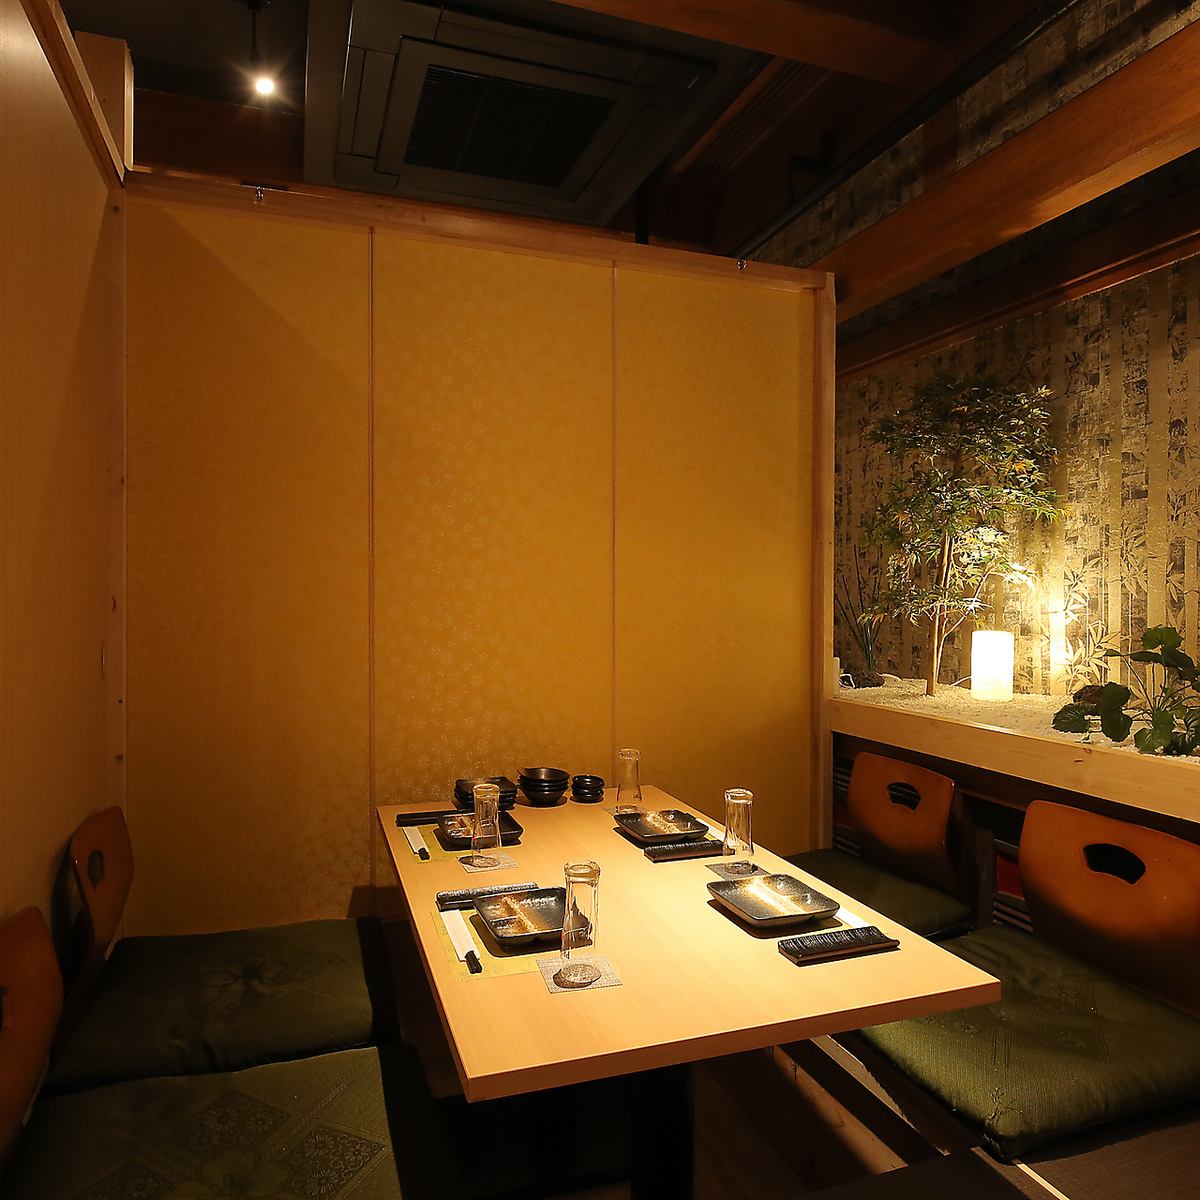 您可以在最多可容納 2 人的完全日式包房中用餐。